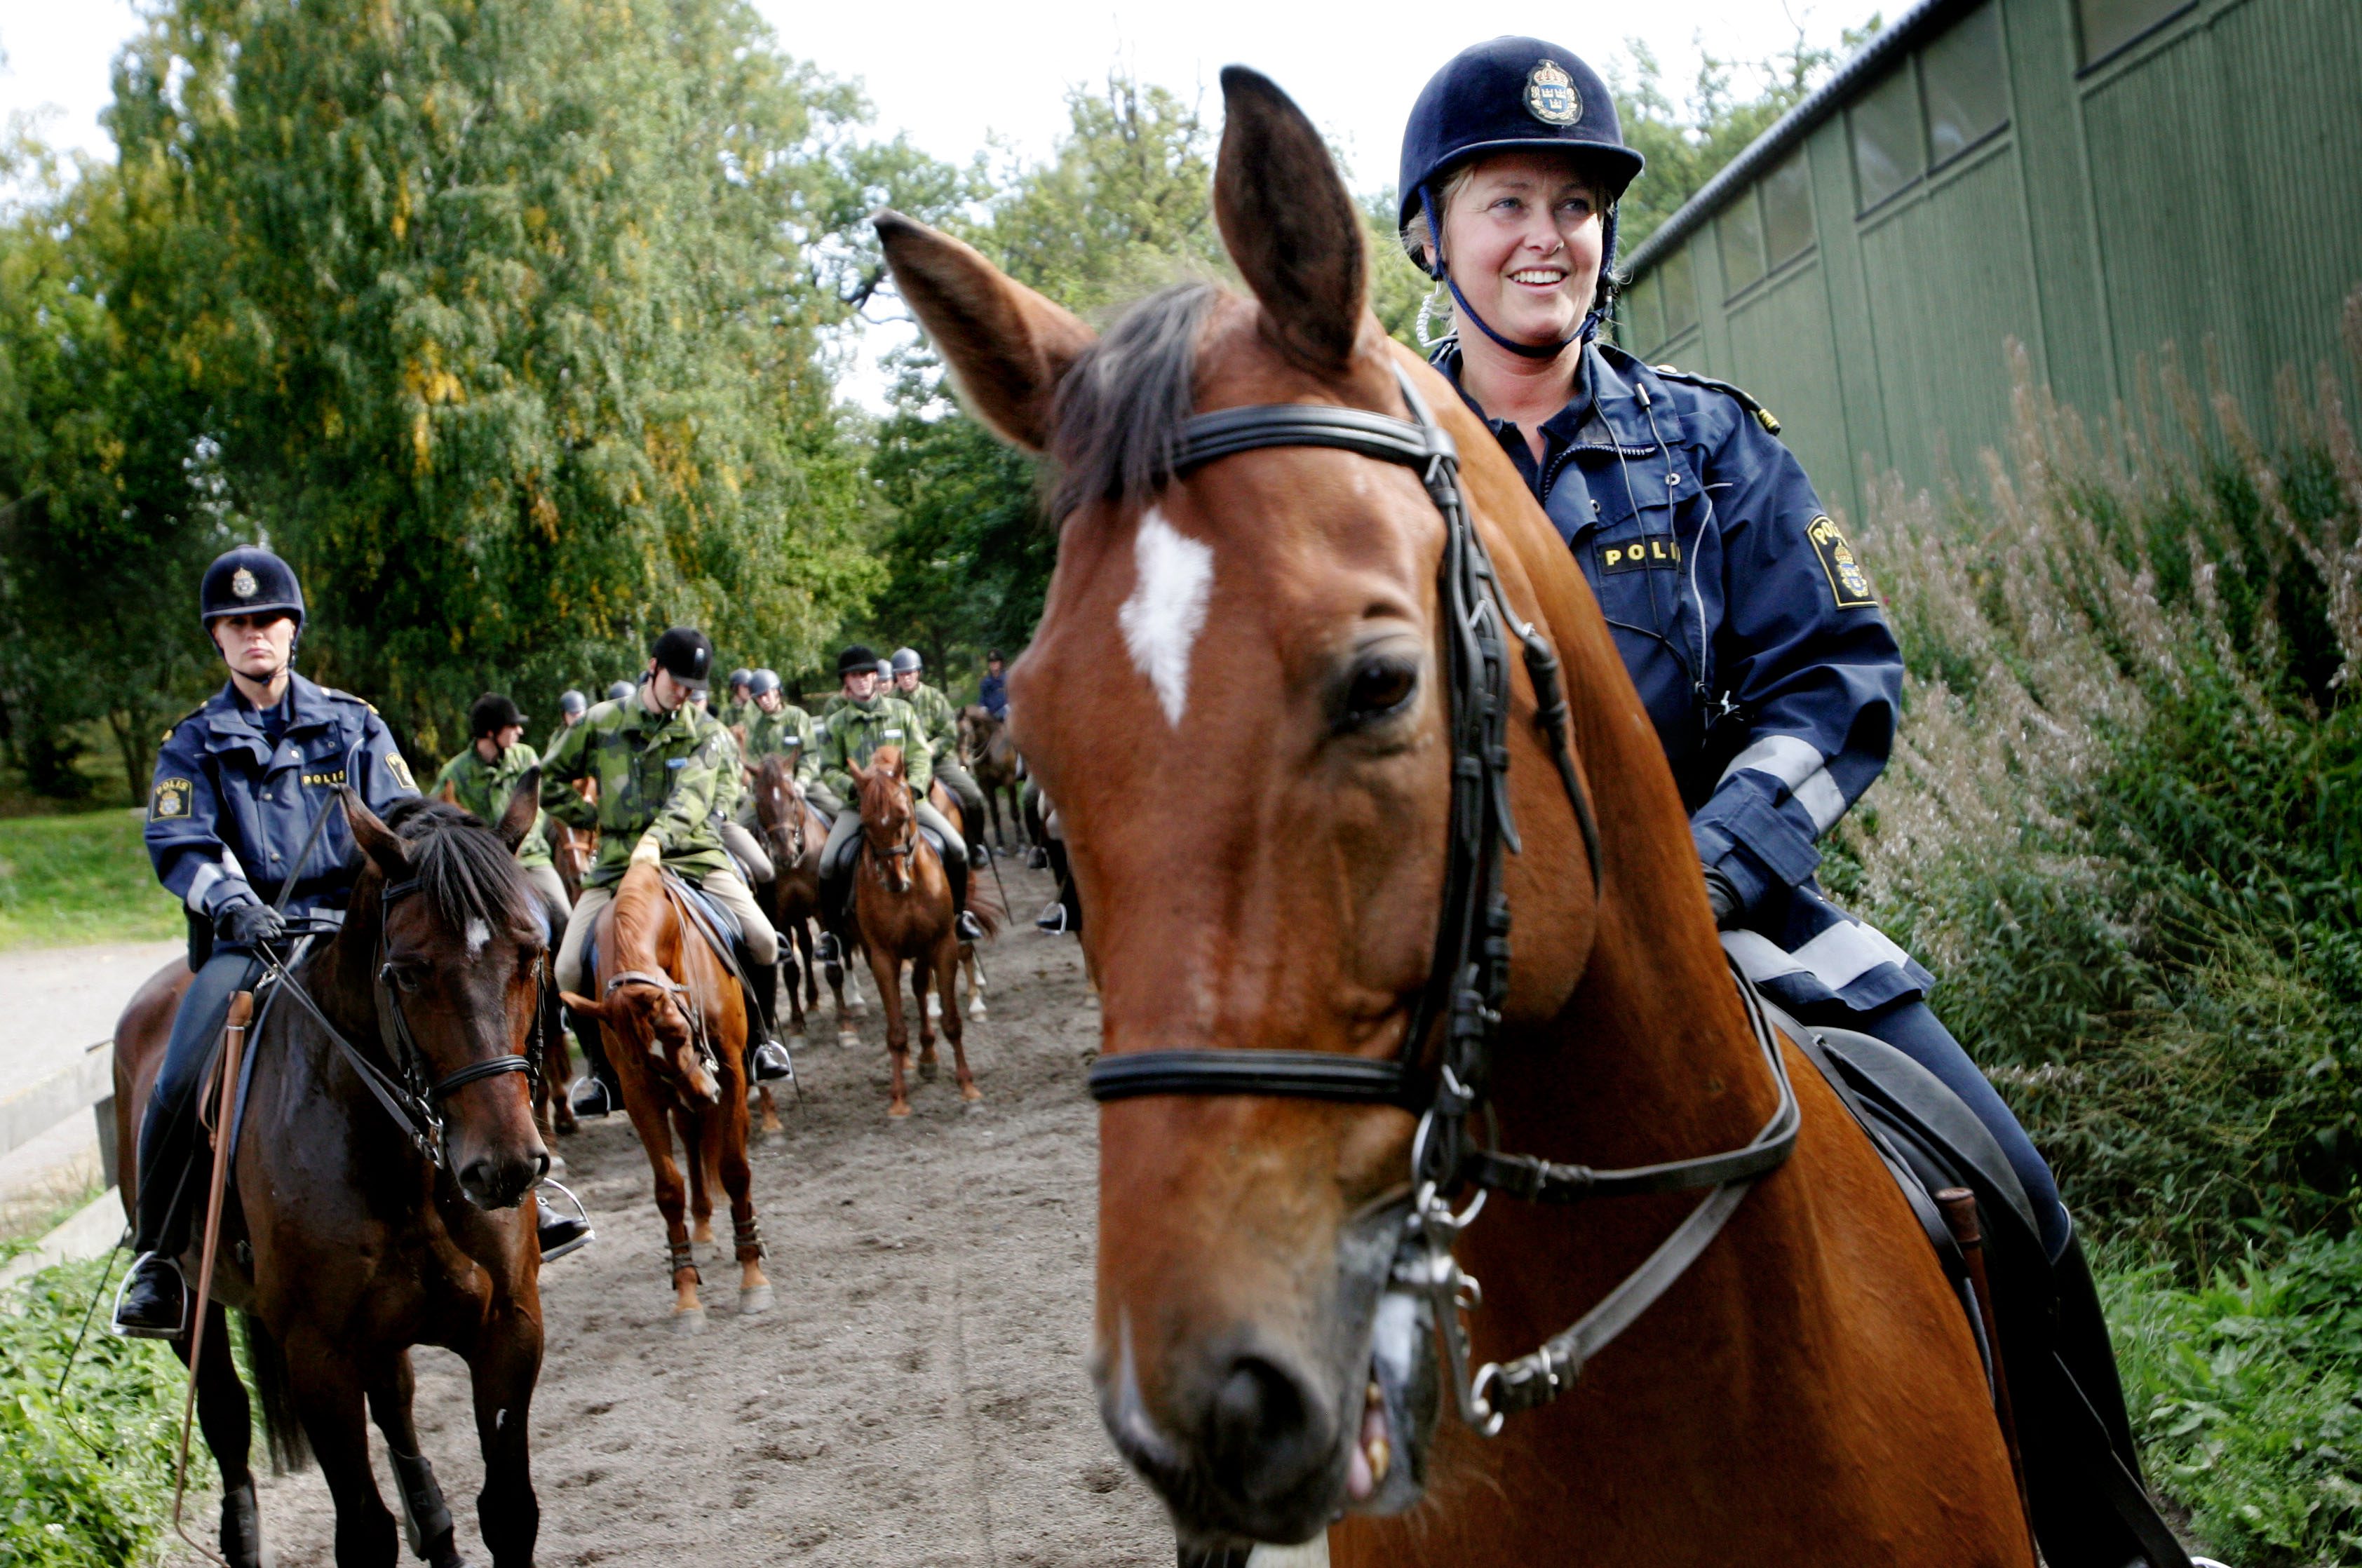 Polismannen ska ha misshandlat sin häst. OBS! Personerna på bilden har inget samband med artikeln.